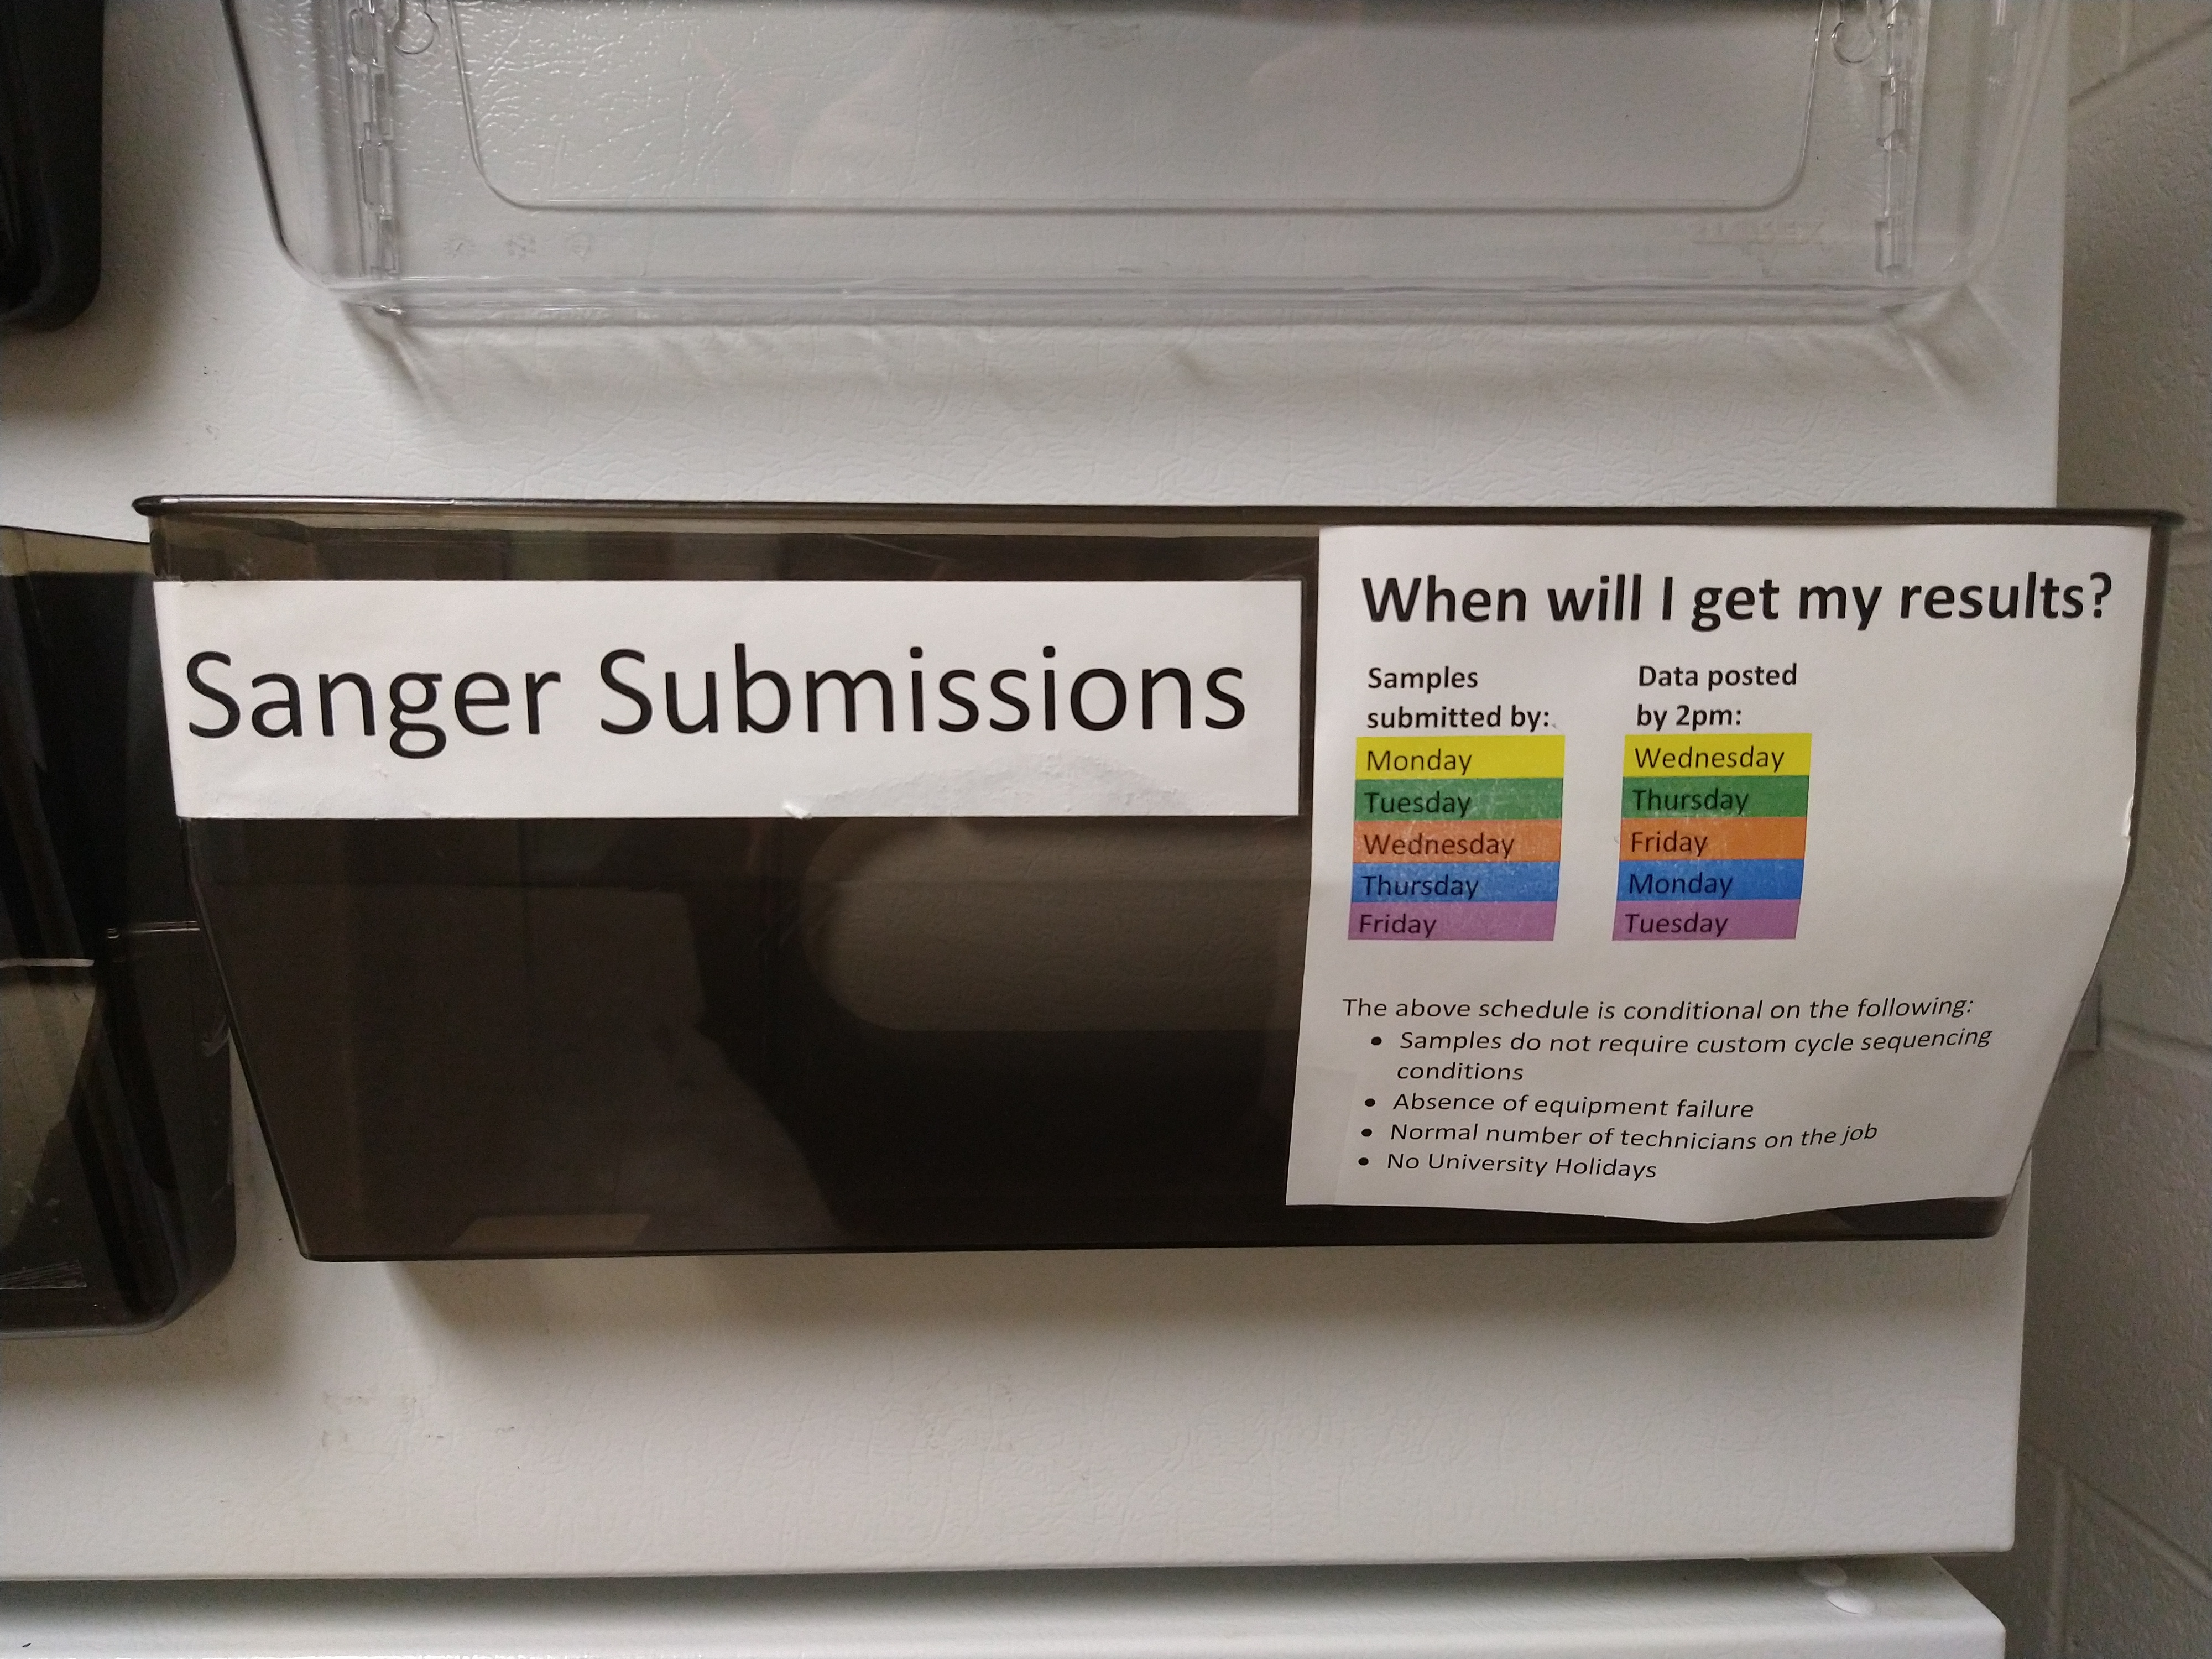 Sanger submission basket on freezer